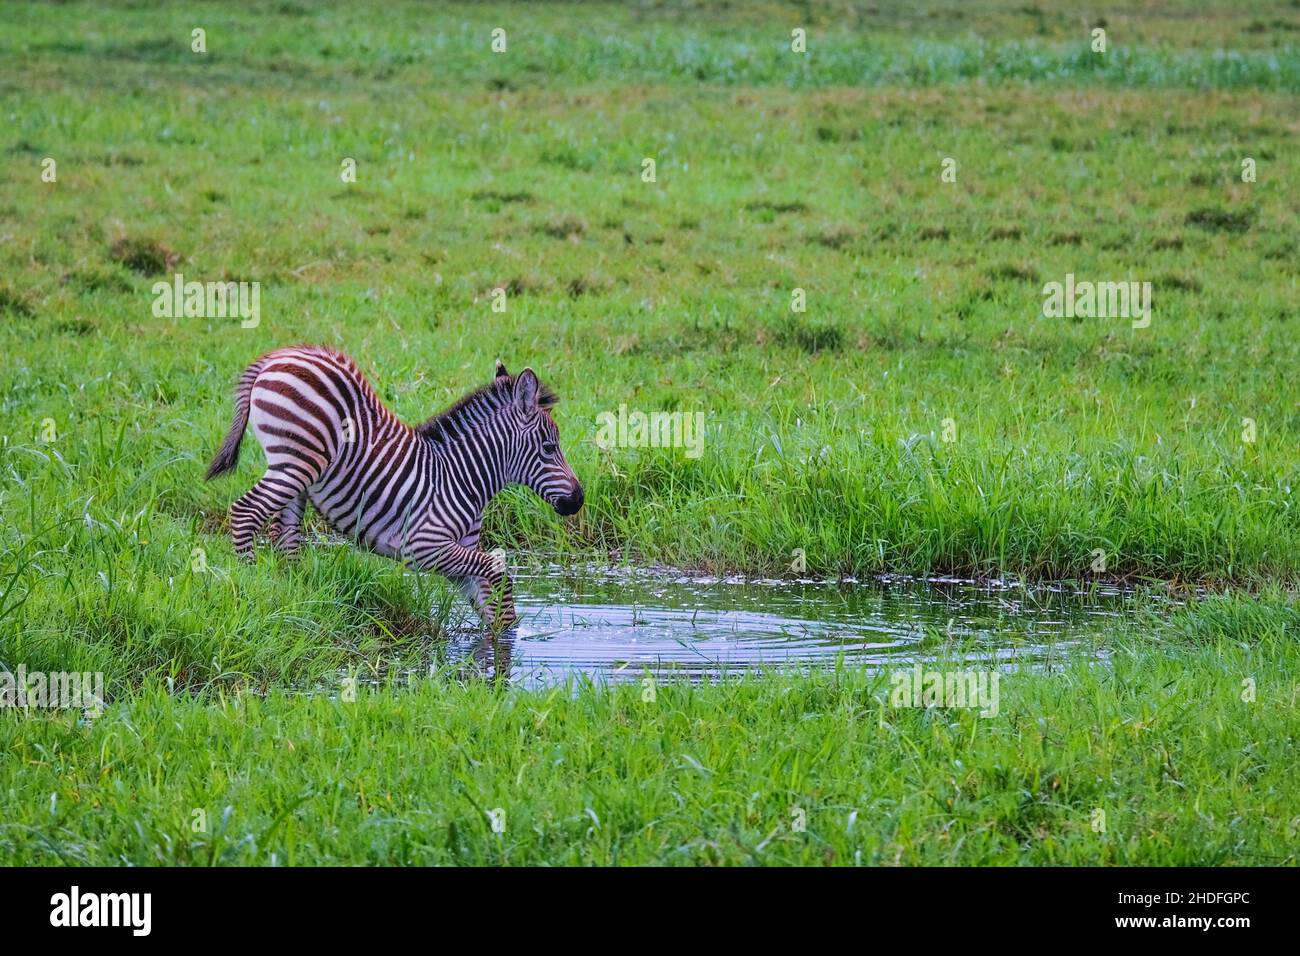 water body, zebra, water bodies, zebras Stock Photo